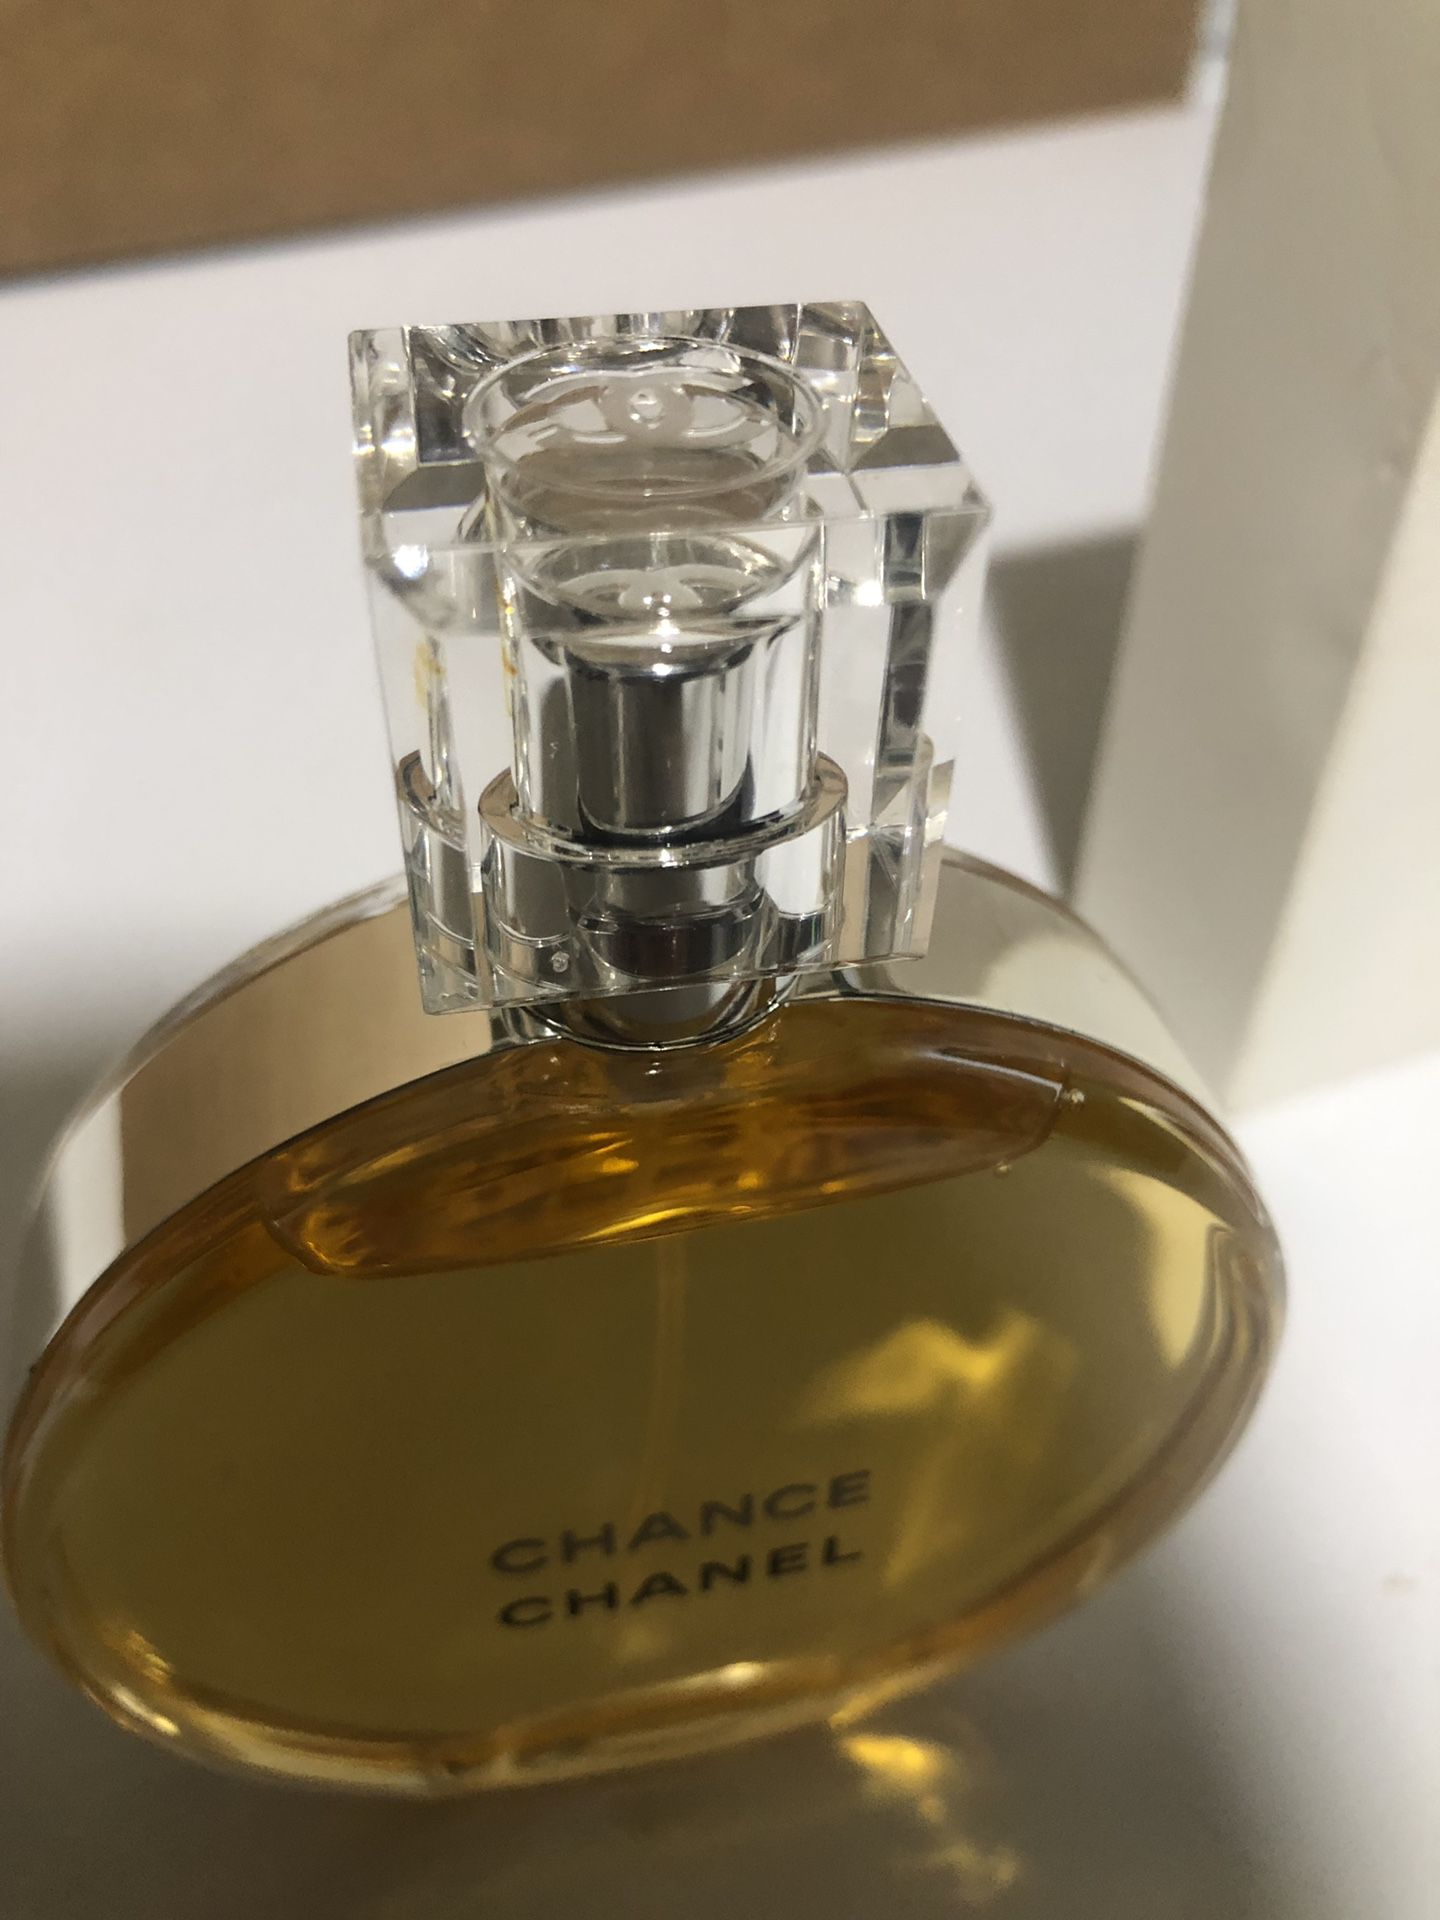 Chanel Chance Eau De Toilette 3.4 Oz. Tester w/ tester box. 100